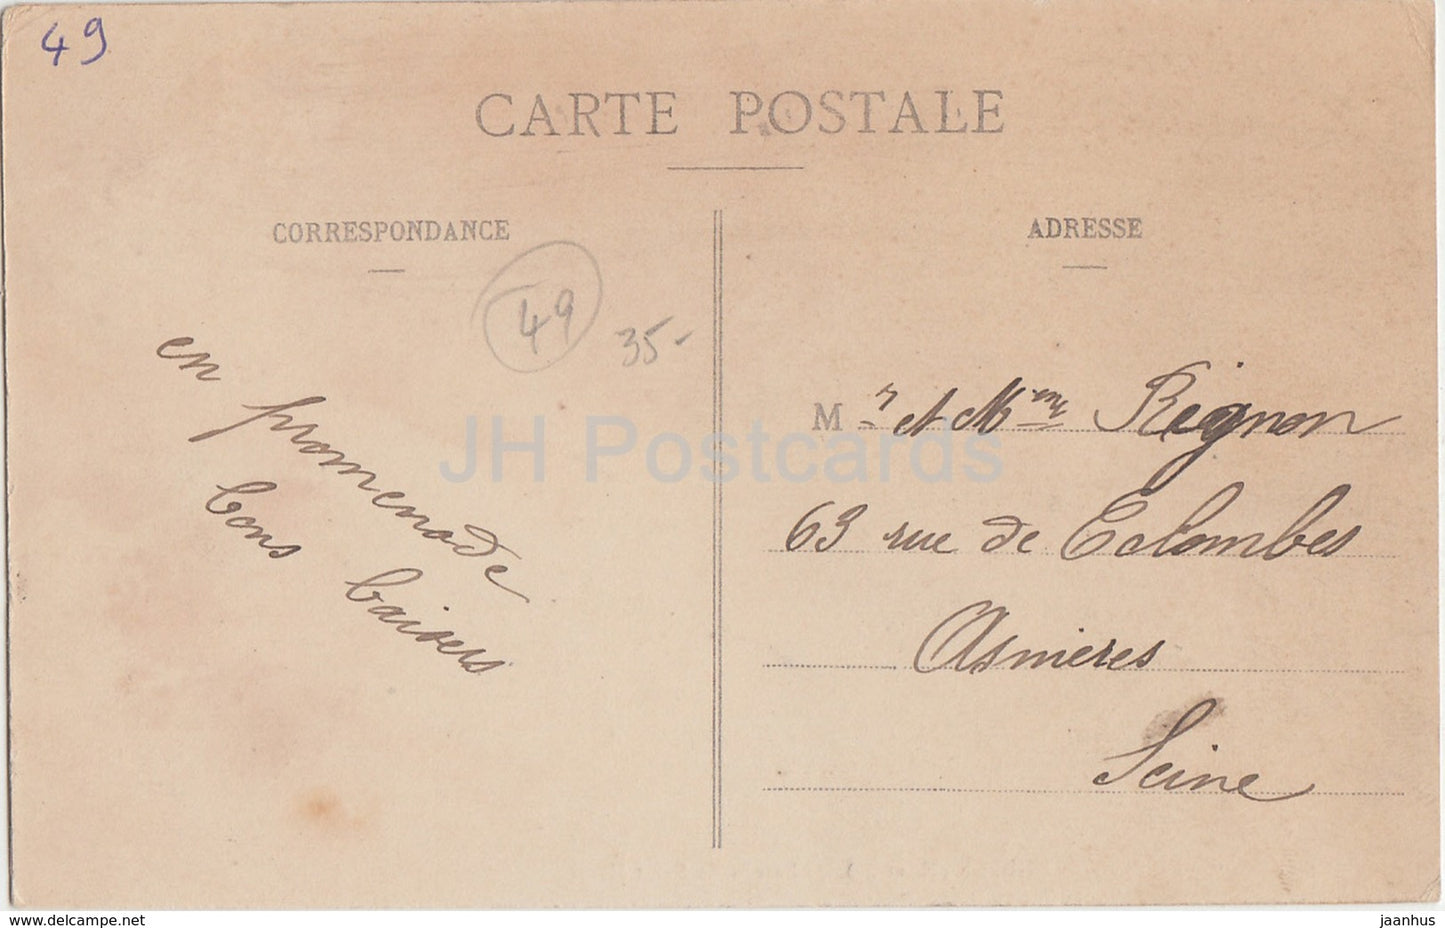 Andigne - Chateau de Saint Henis - castle - old postcard - France - used